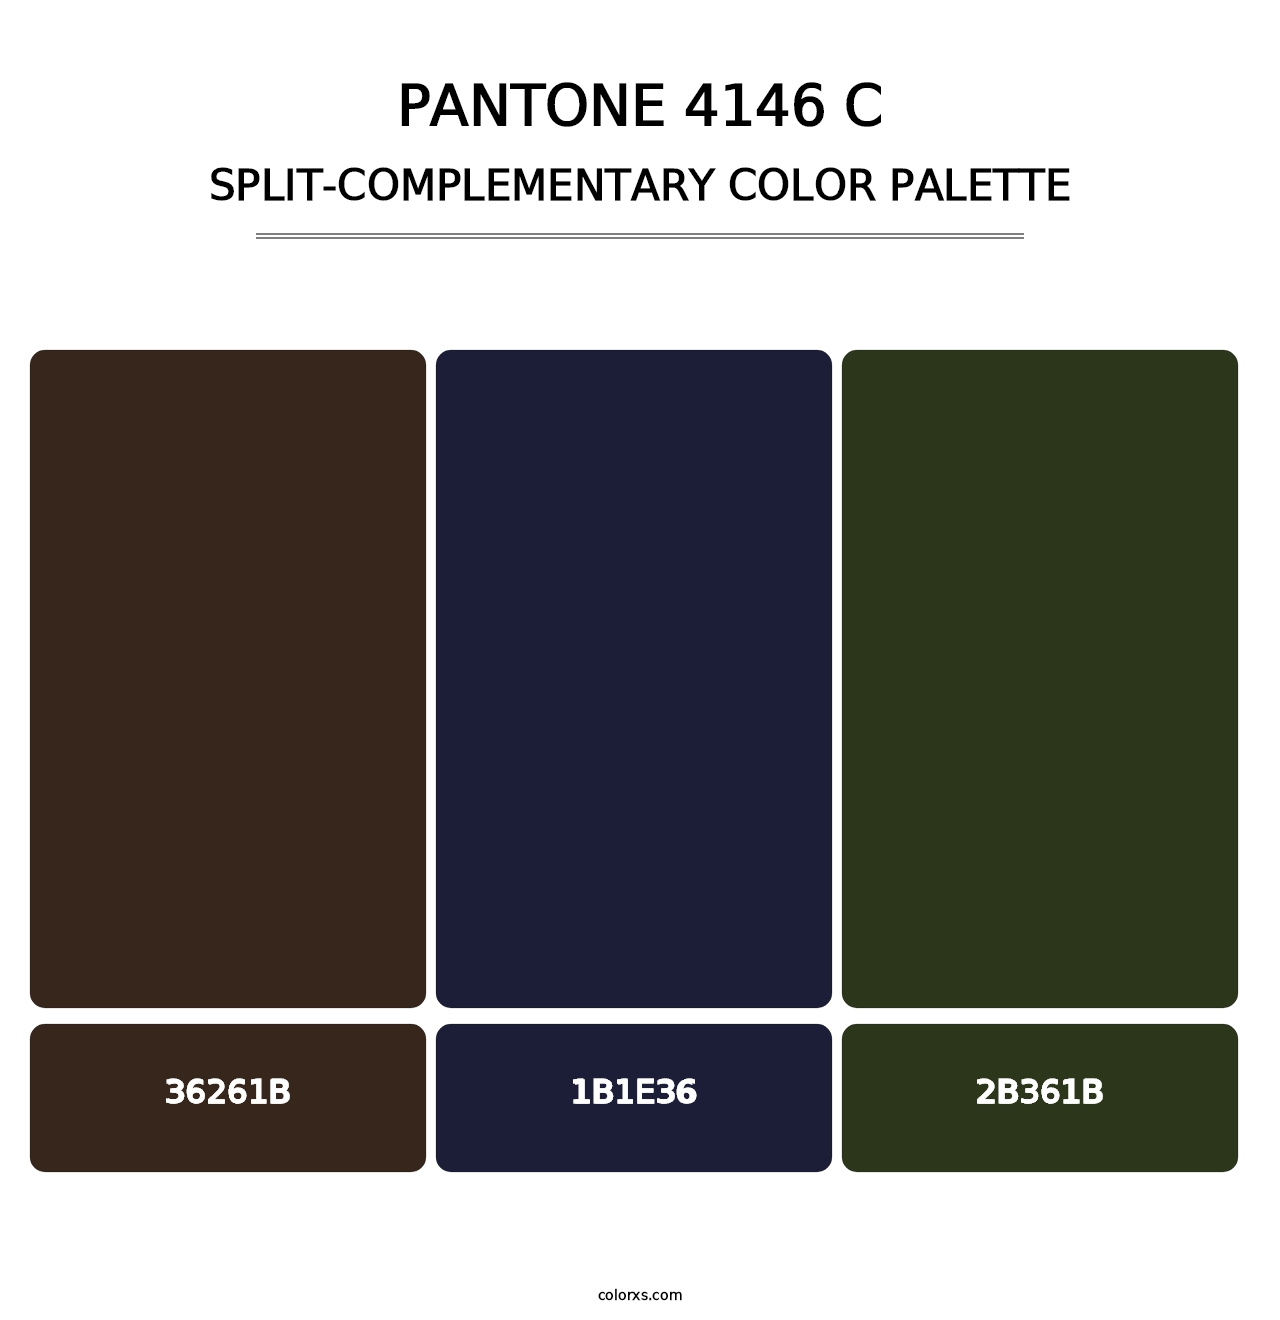 PANTONE 4146 C - Split-Complementary Color Palette